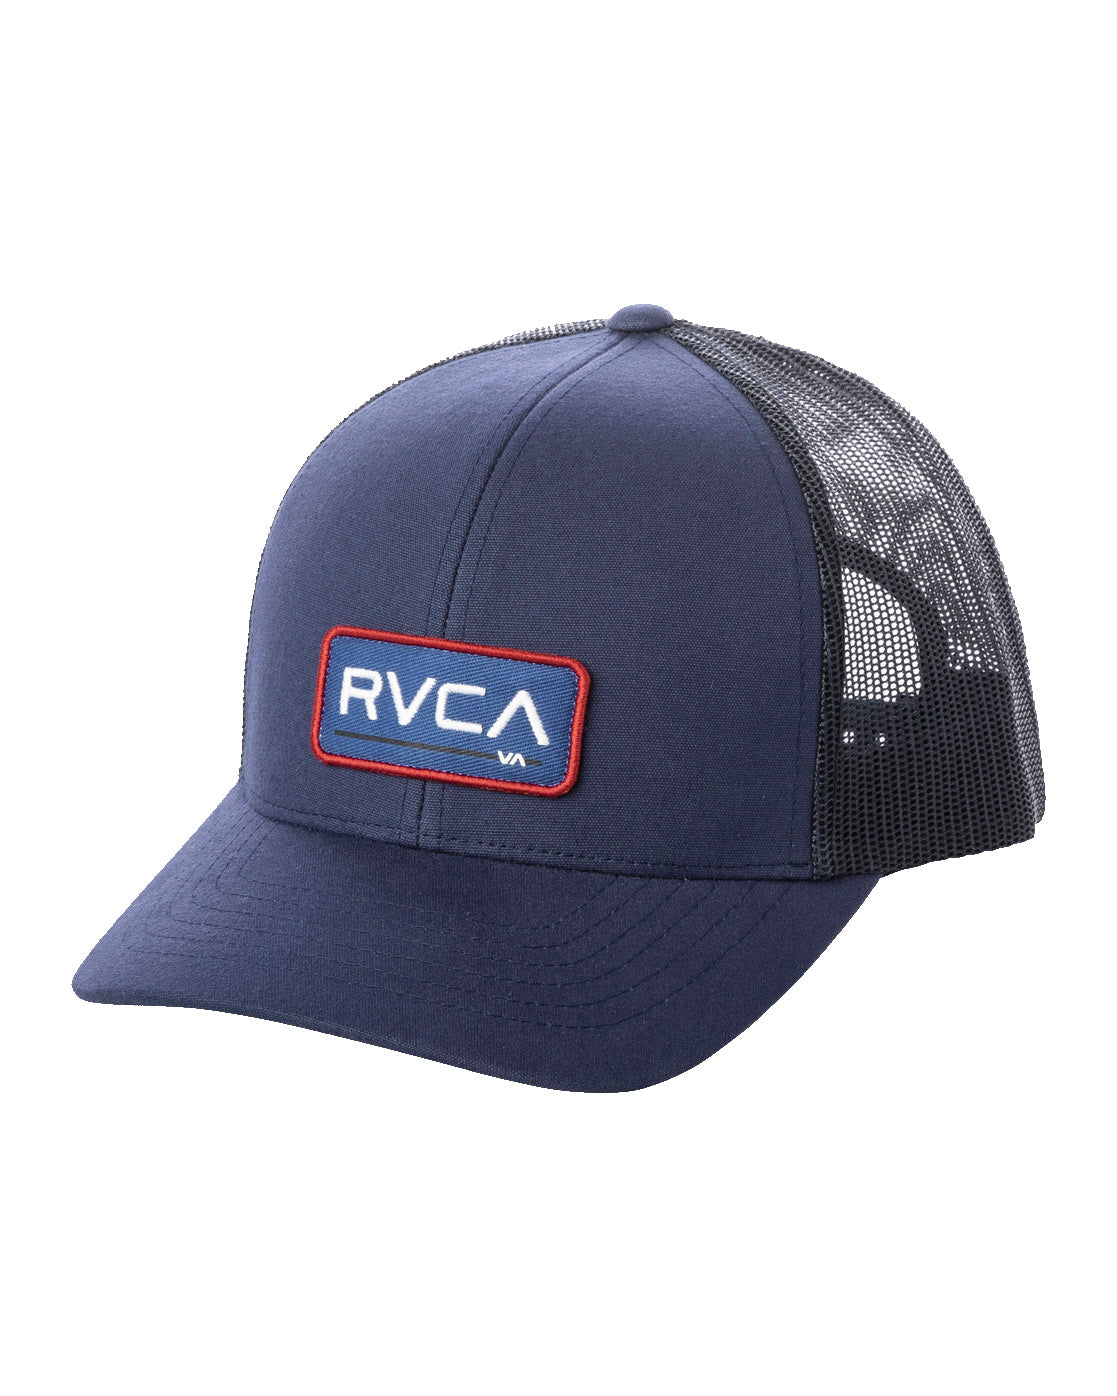 RVCA Ticket Trucker Hat III MYV OS